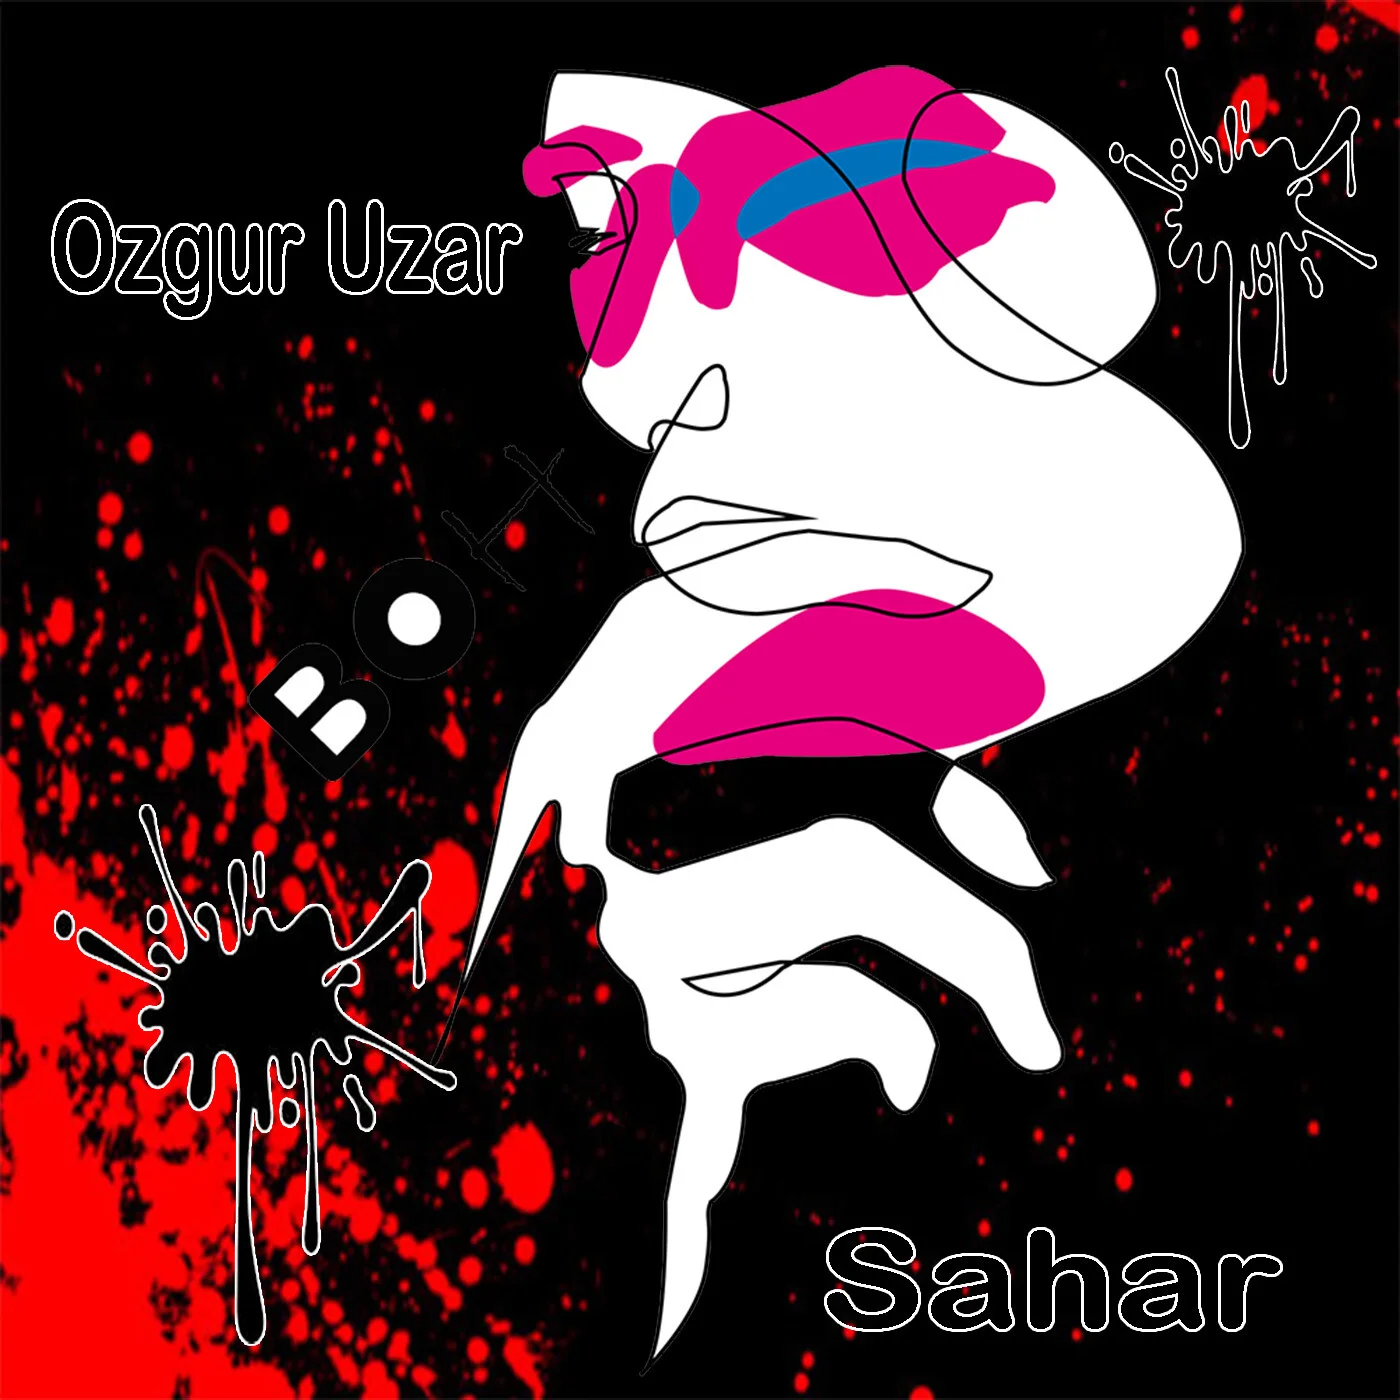 Ozgur Uzar - On The Road (Original Mix)